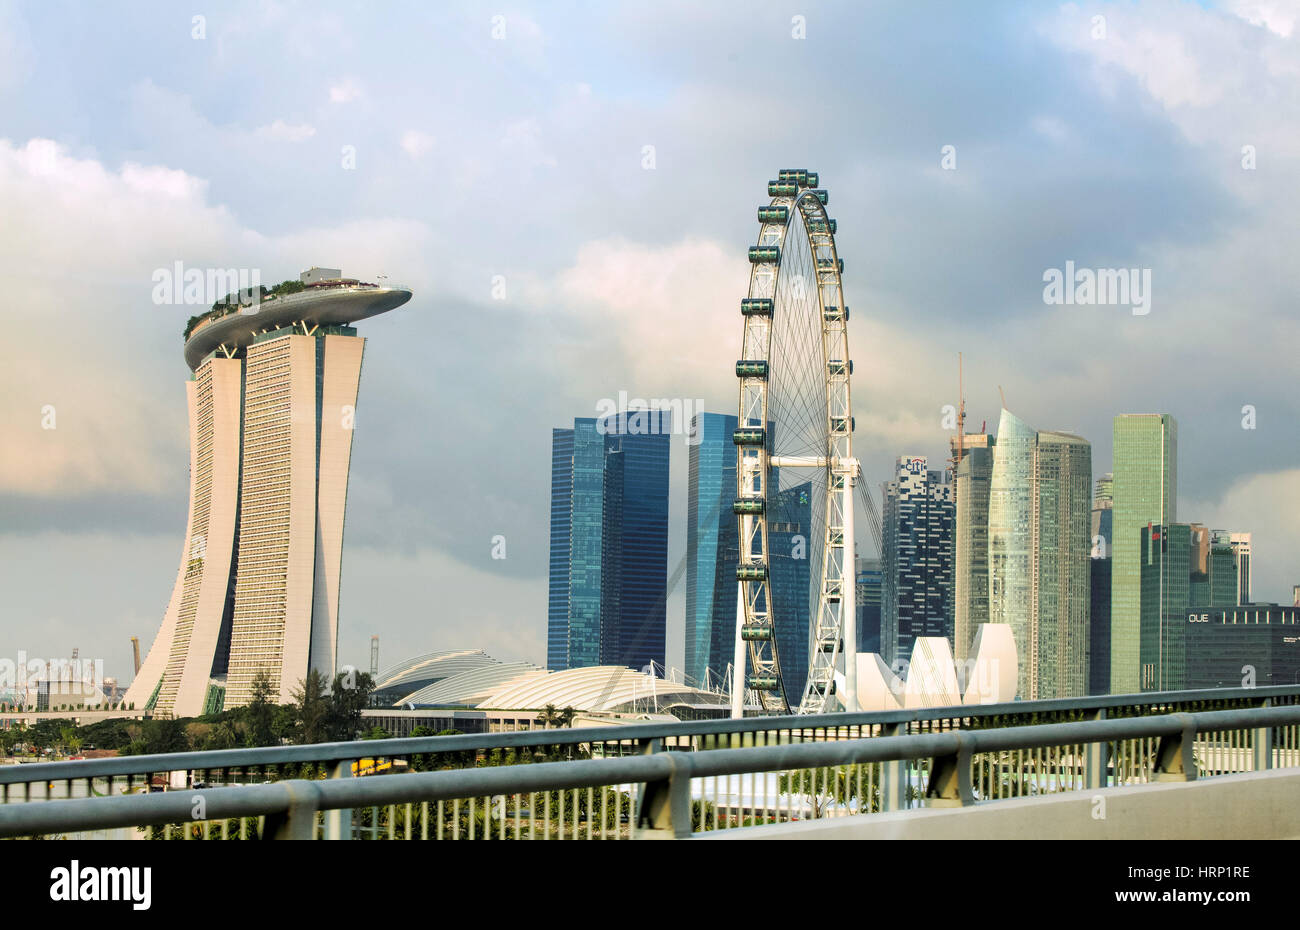 Riesenrad Singapore Flyer, futuristische Marina Bay Sands Hotel, Architekten Moshe Safdie, Marina Bay, zentralen Kern,, Singapur, Asien, Singapur Stockfoto